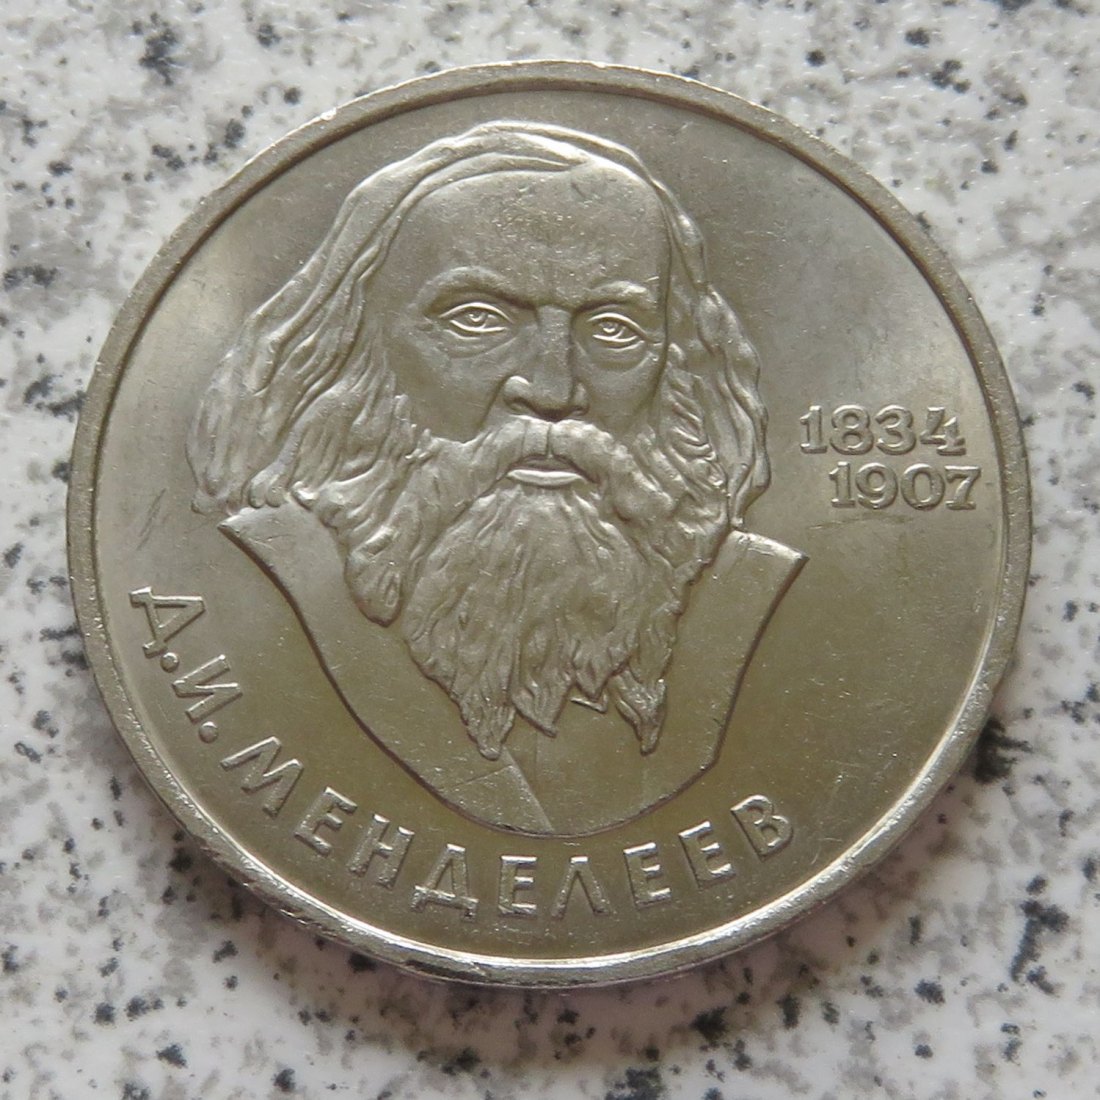  Sowjetunion 1 Rubel 1984 150. Geburtstag Mendelejew   